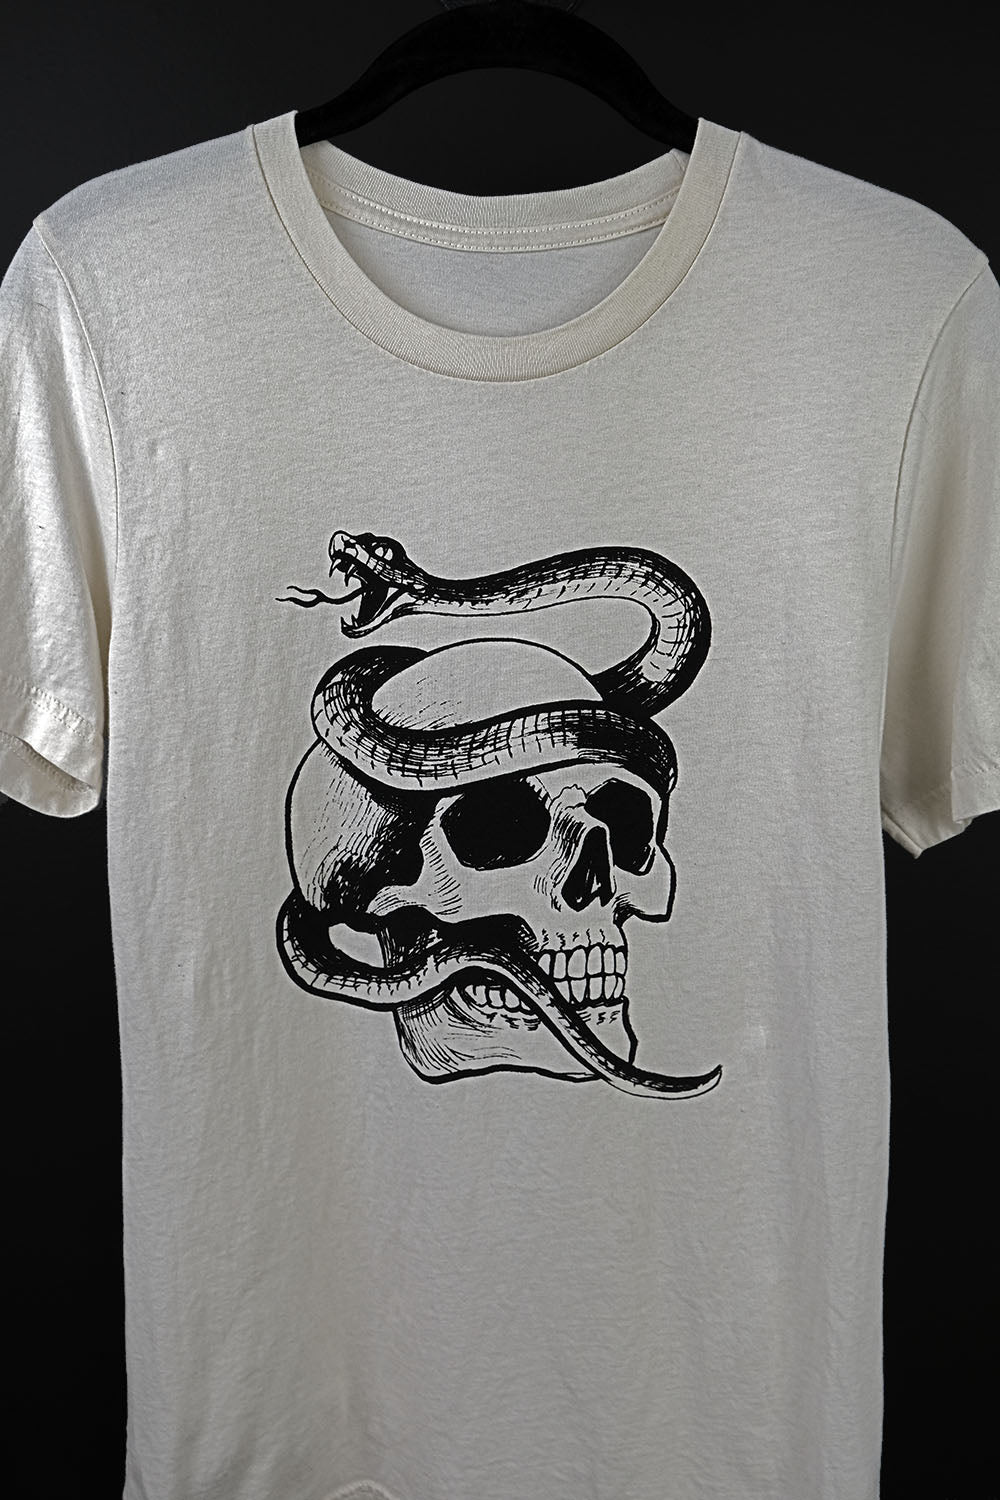 Serpent Skull on Thin White Tee